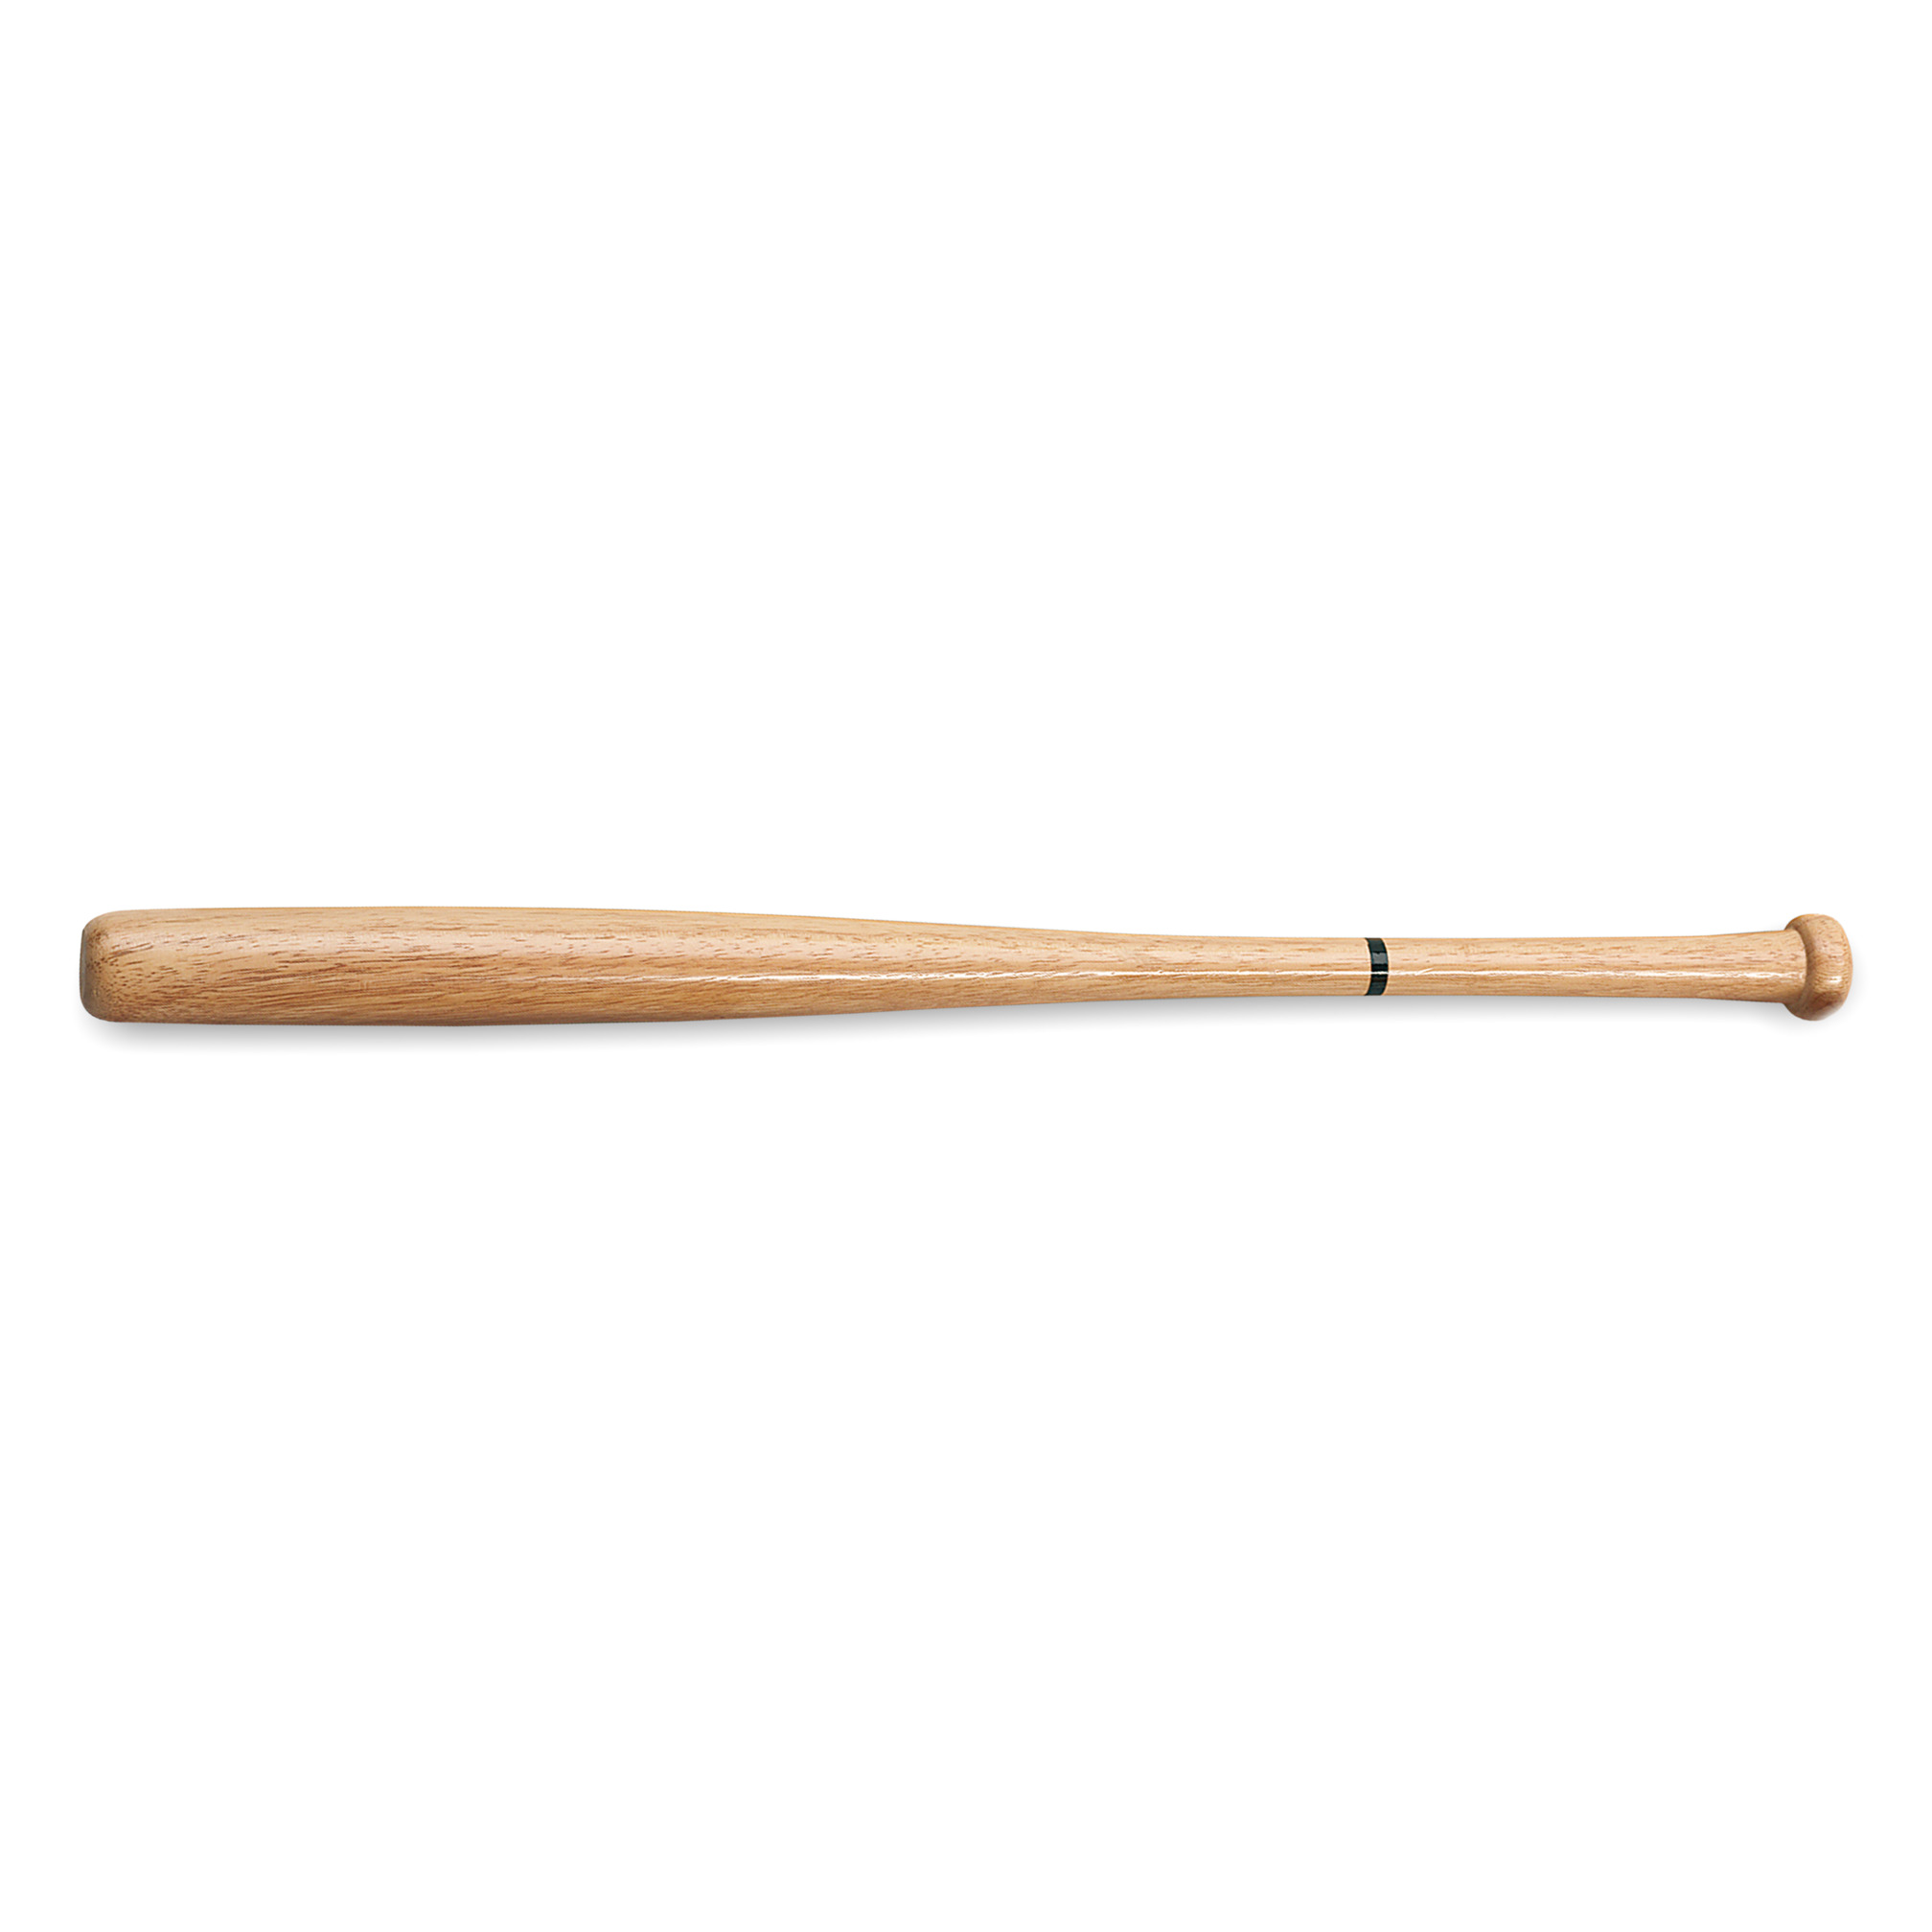 Softball bat wooden, 28 inch